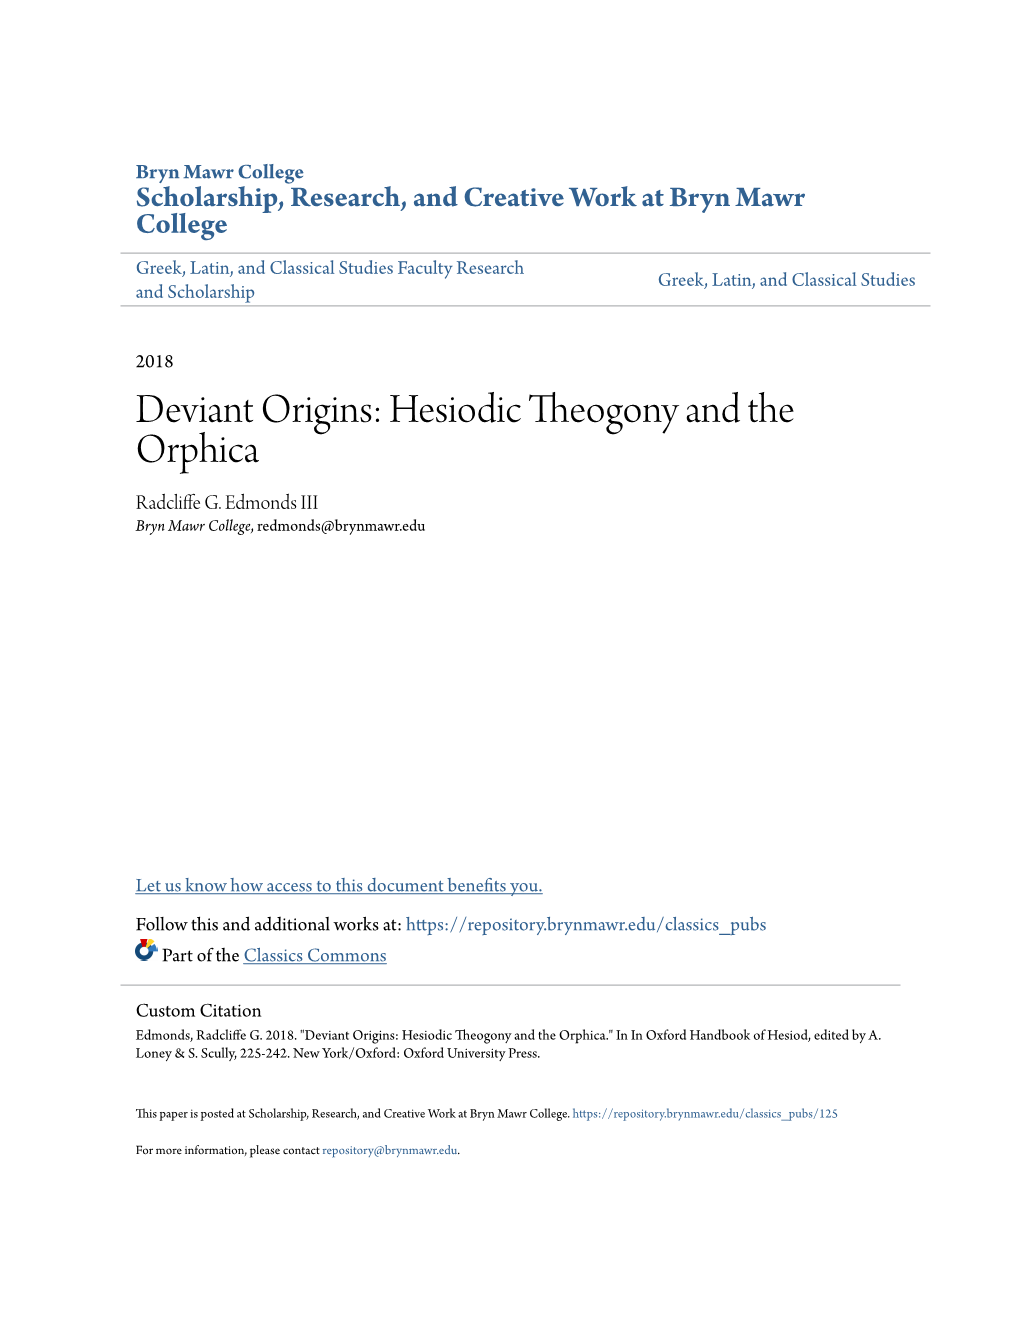 Deviant Origins: Hesiodic Theogony and the Orphica Radcliffe .G Edmonds III Bryn Mawr College, Redmonds@Brynmawr.Edu